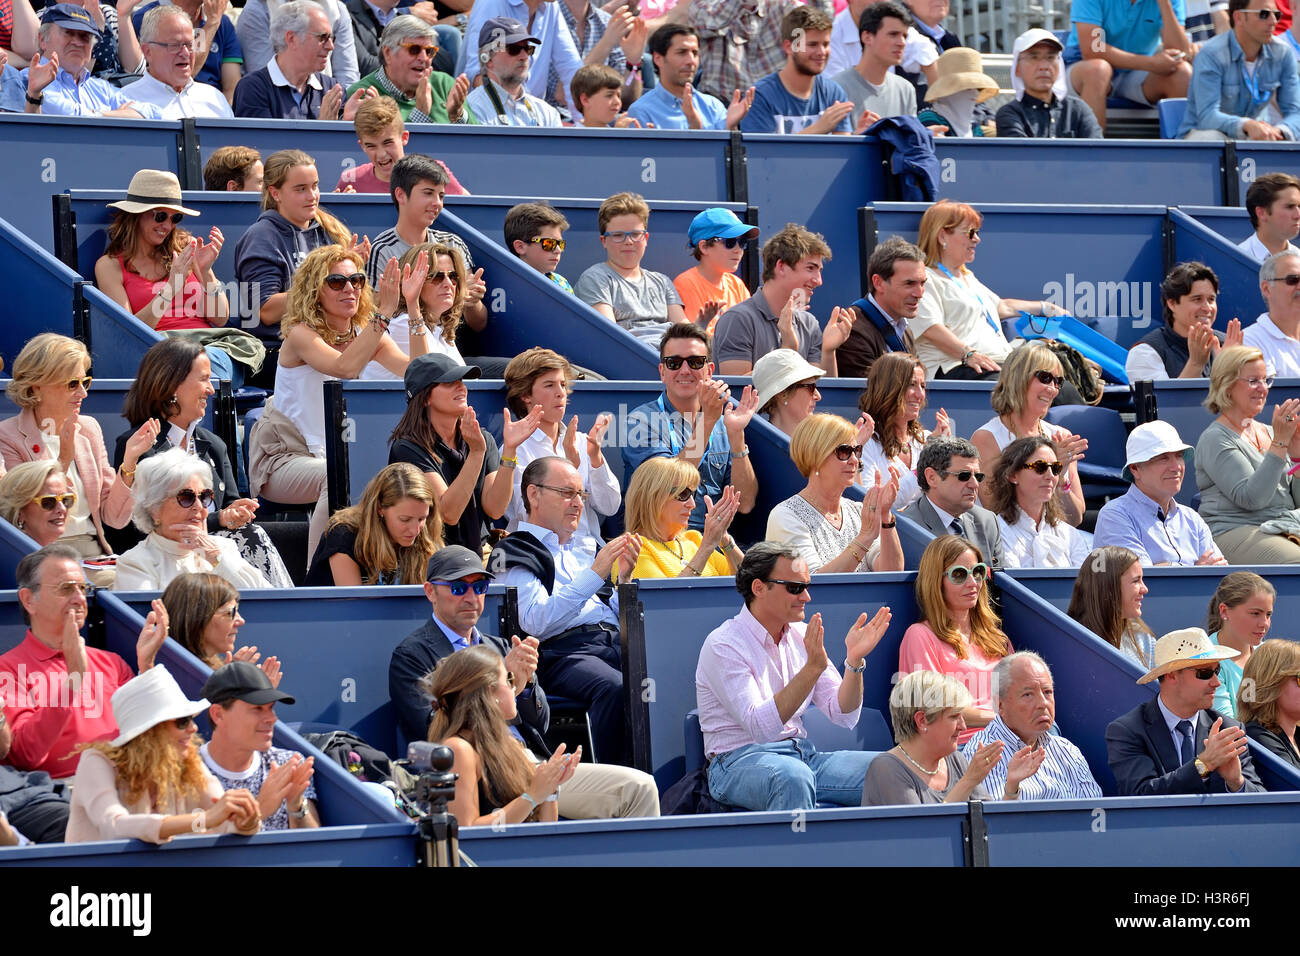 Barcelone - APR 24 : les spectateurs à l'ATP Open de Barcelone Banc Sabadell Conde de Godo tournoi. Banque D'Images